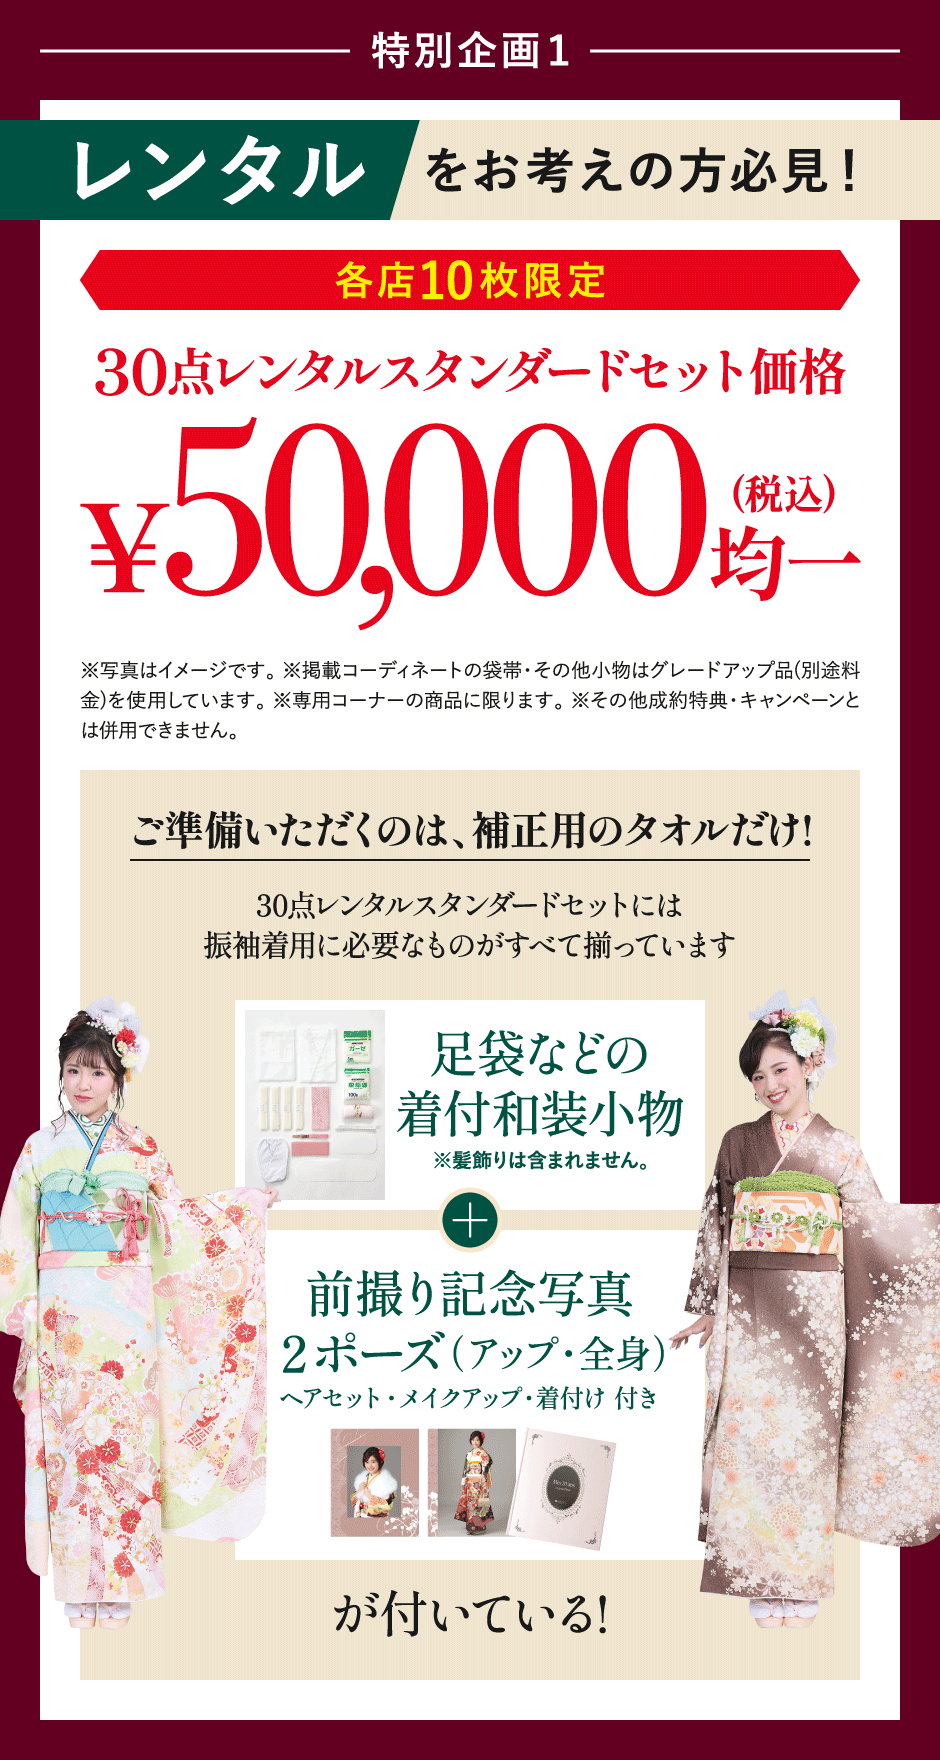 レンタルセット5万円(税込)均一